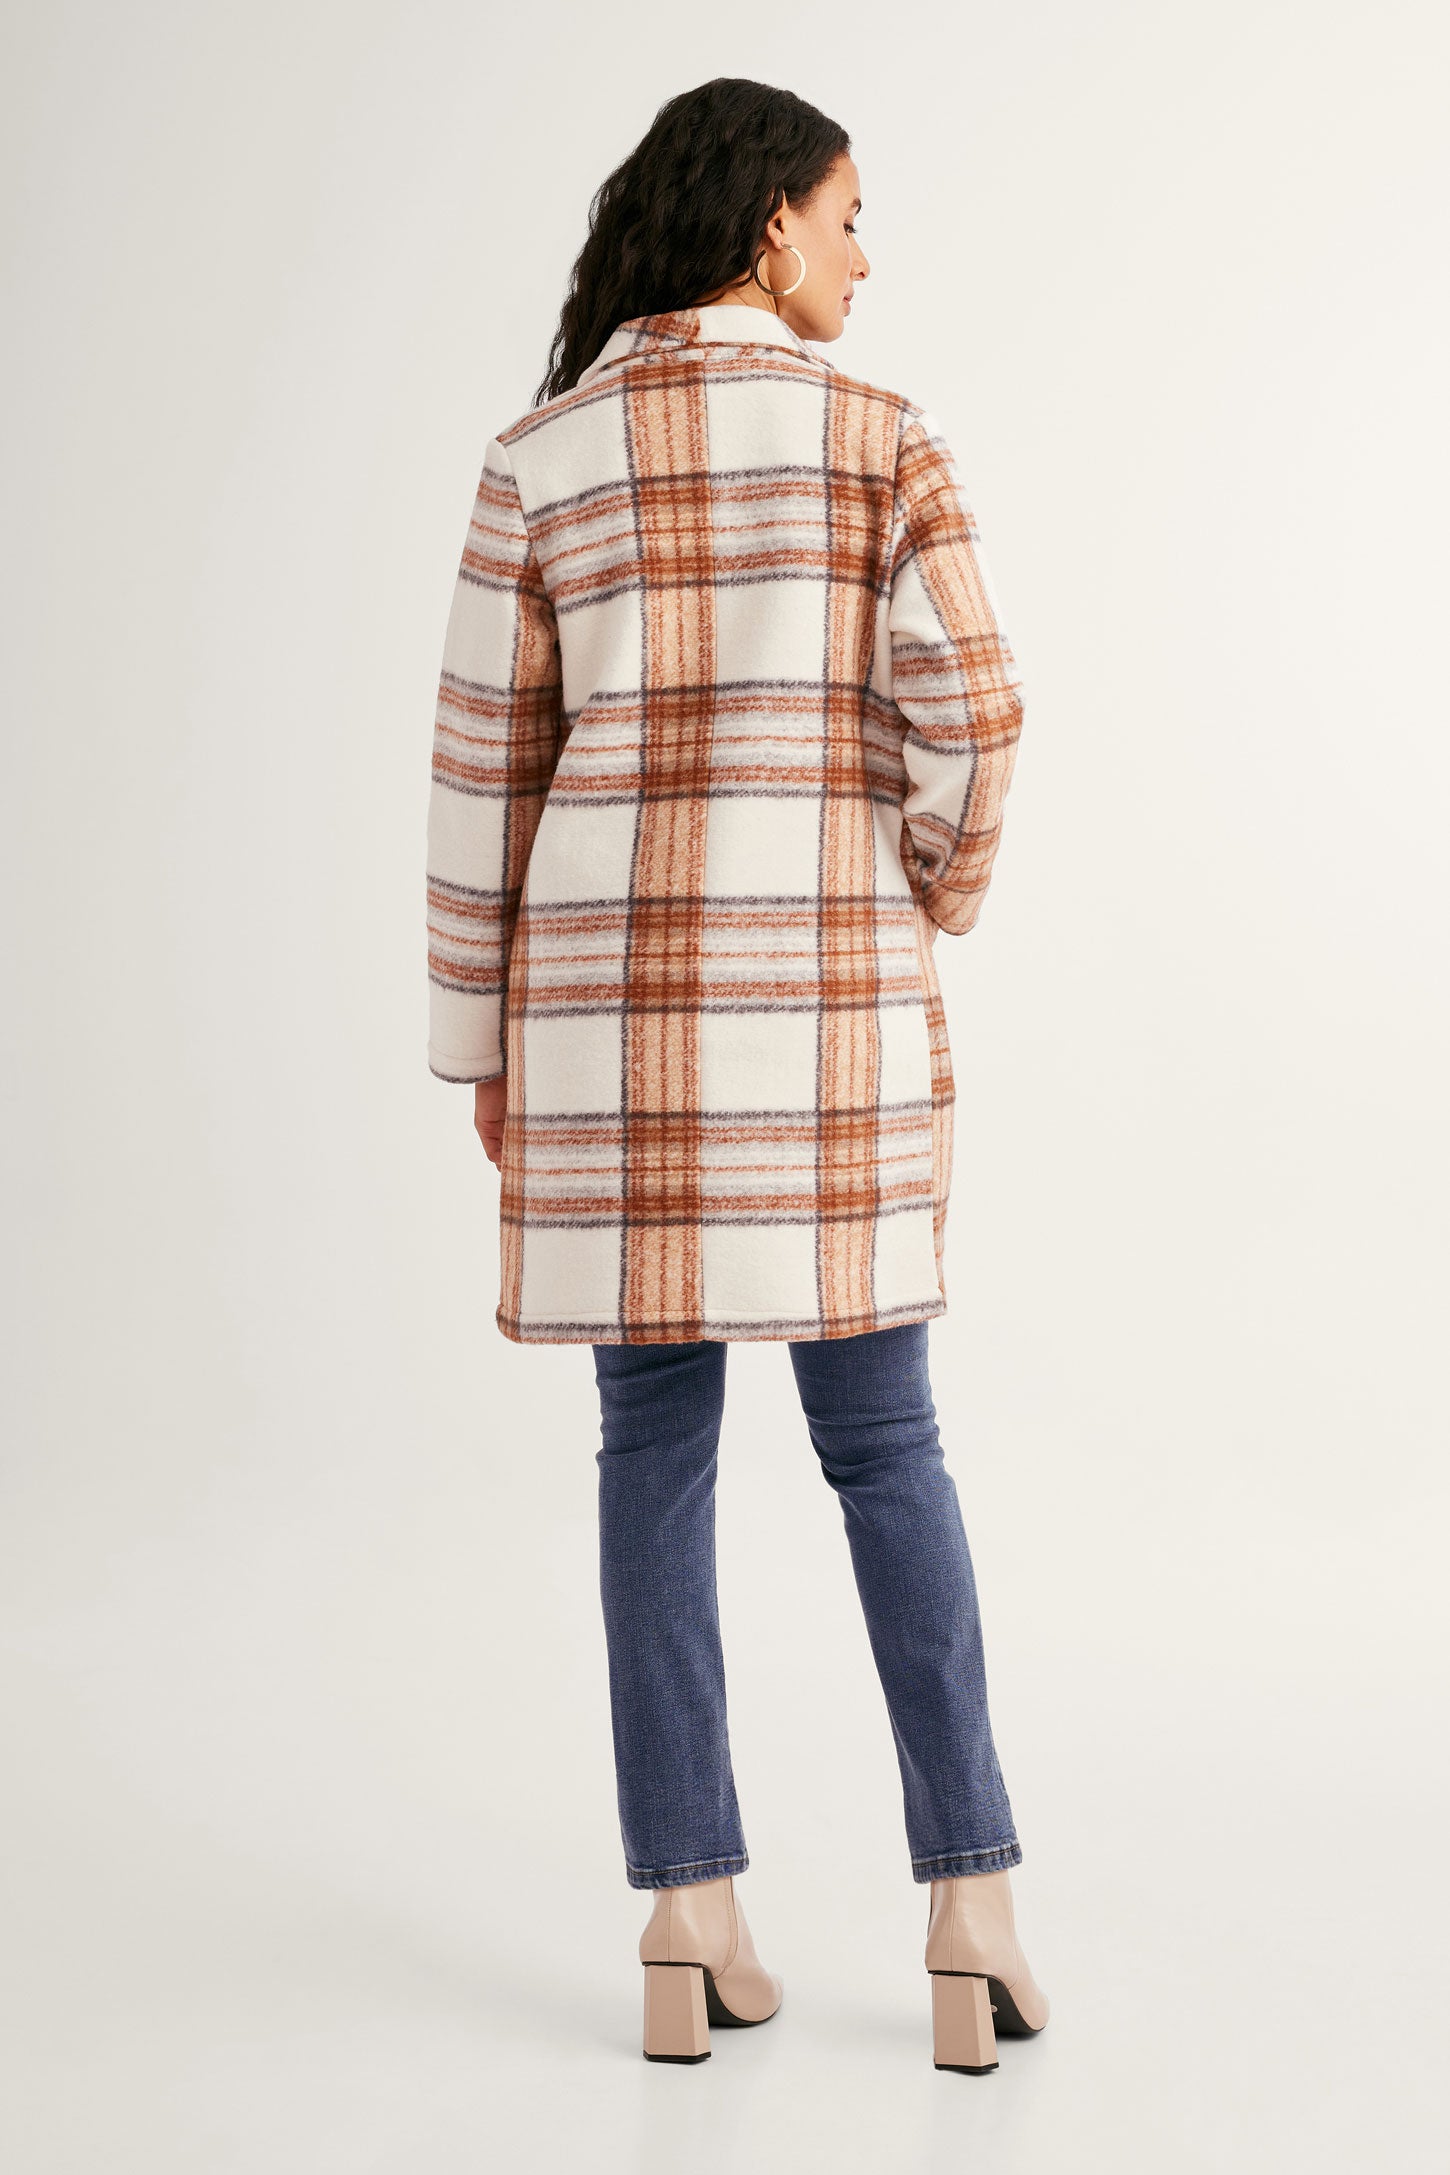 Veston tricot brossé jacquard à carreaux - Femme && BLANC CASSÉ/MULTI